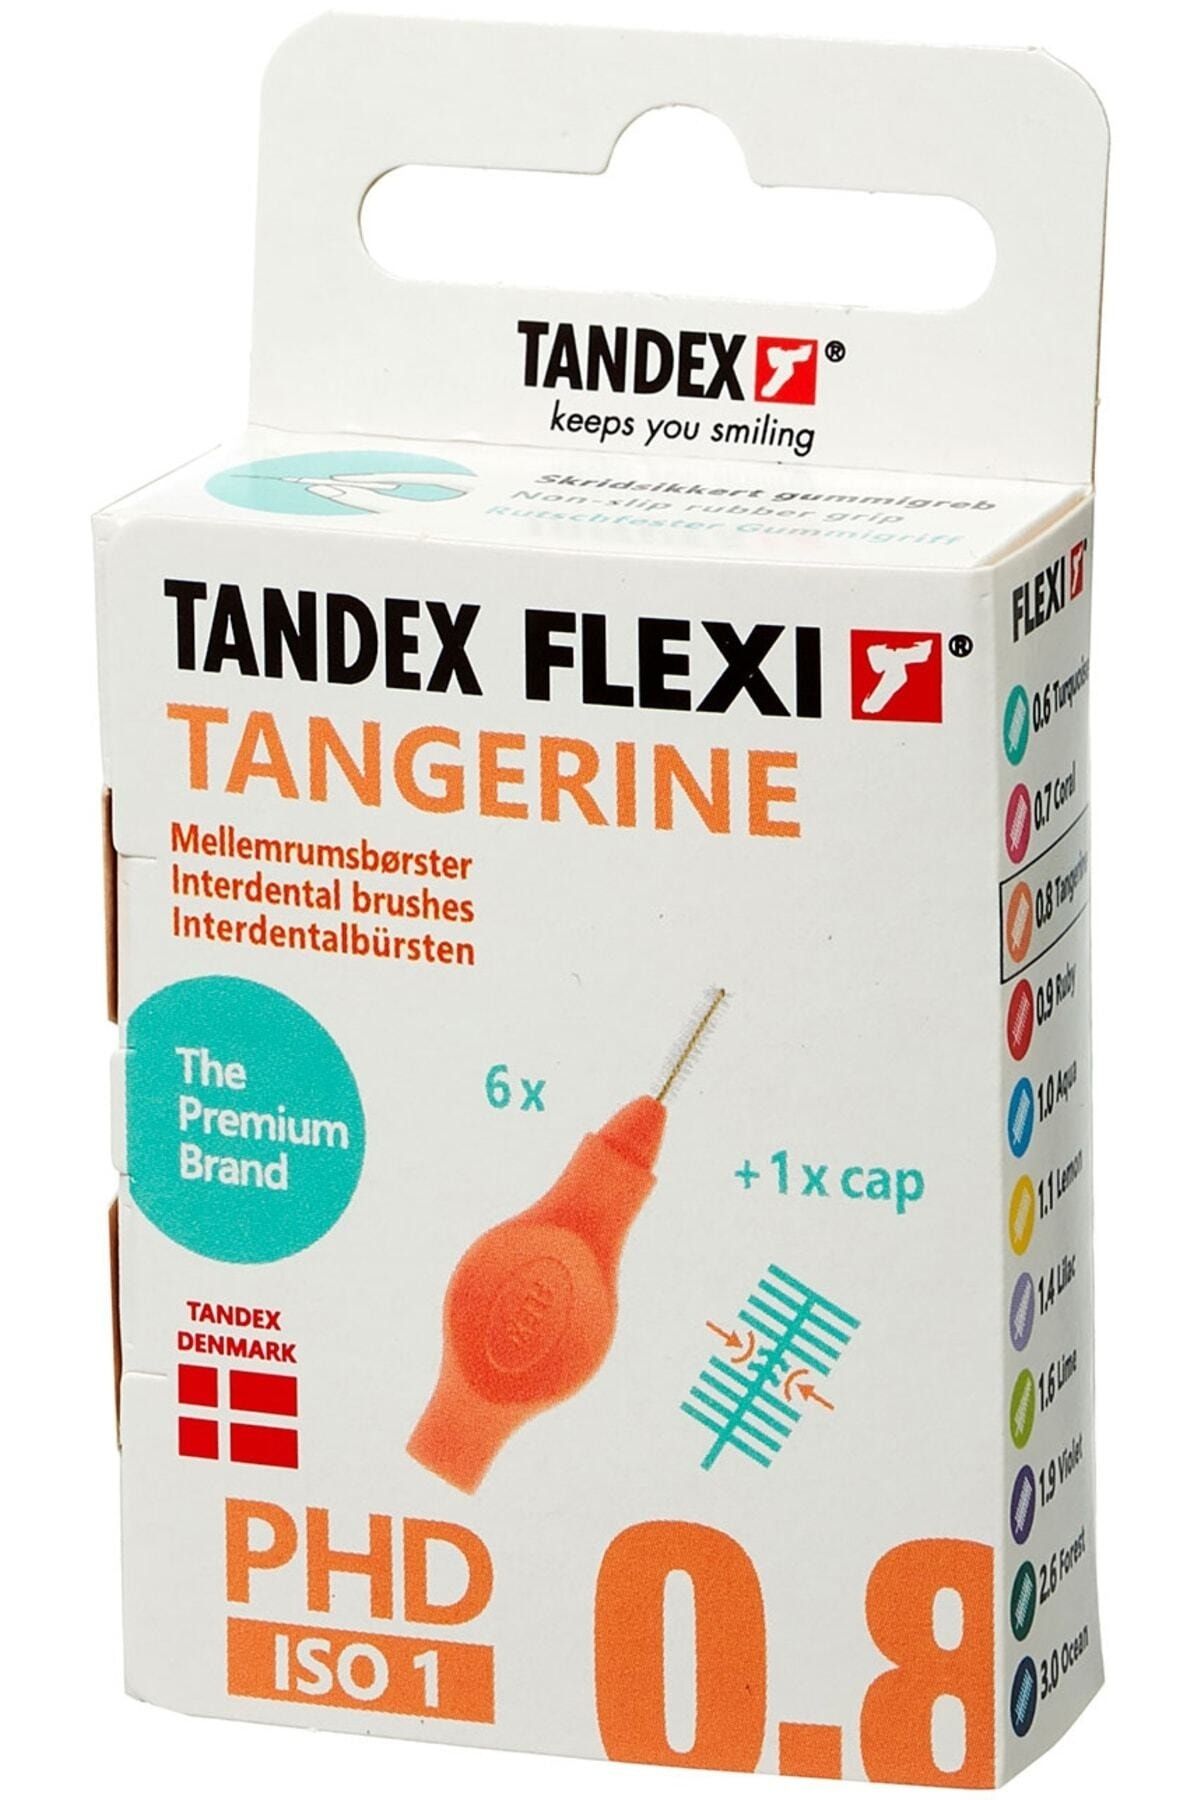 TANDEX Flexi 6lı Arayüz Fırçası 0.45mm - Tangerine